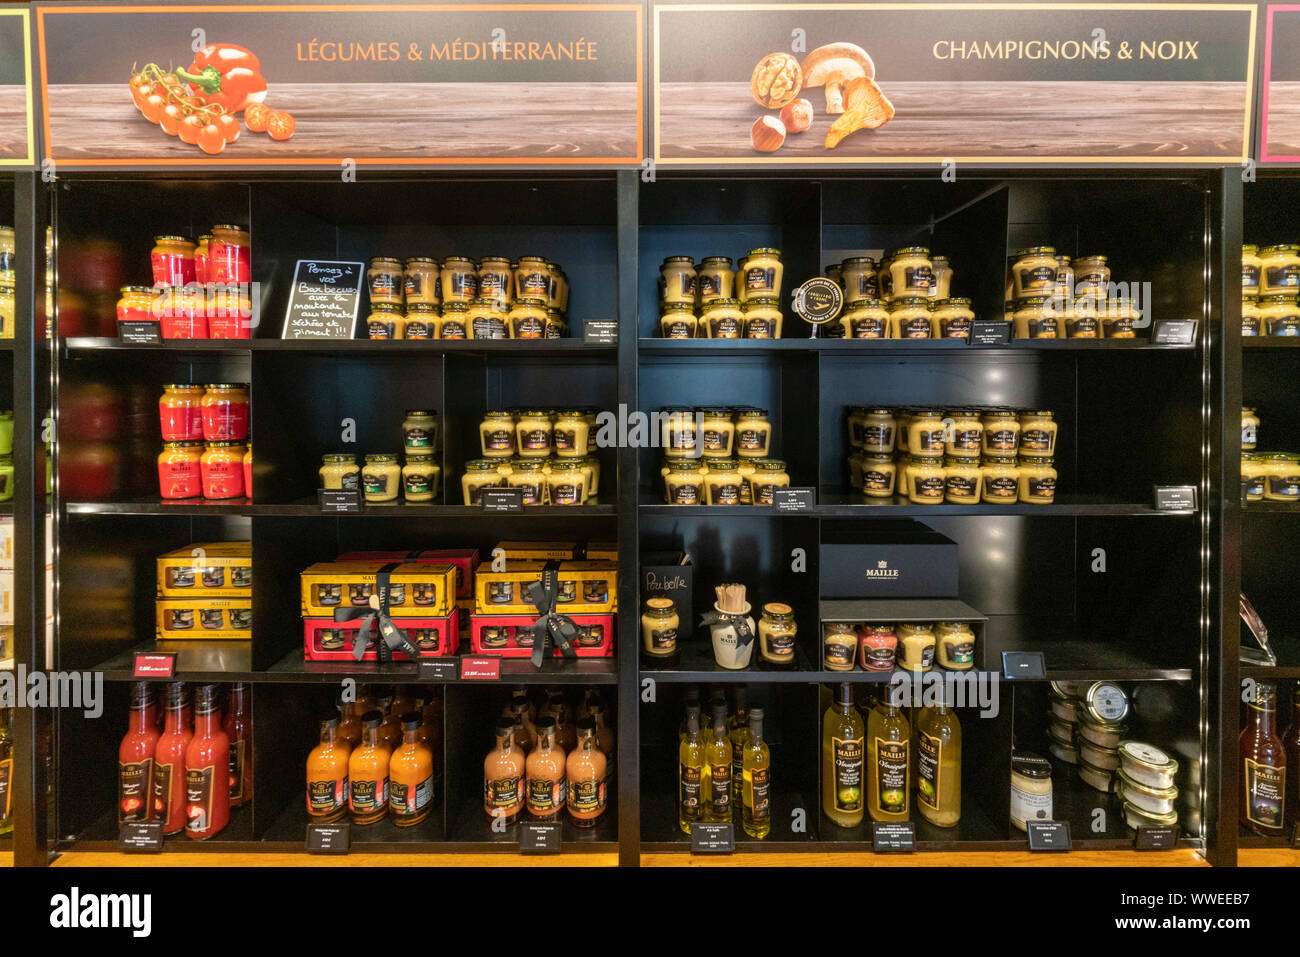 Maille moutarde, une boutique gastronomique, Dijon, Bourgogne, France Banque D'Images